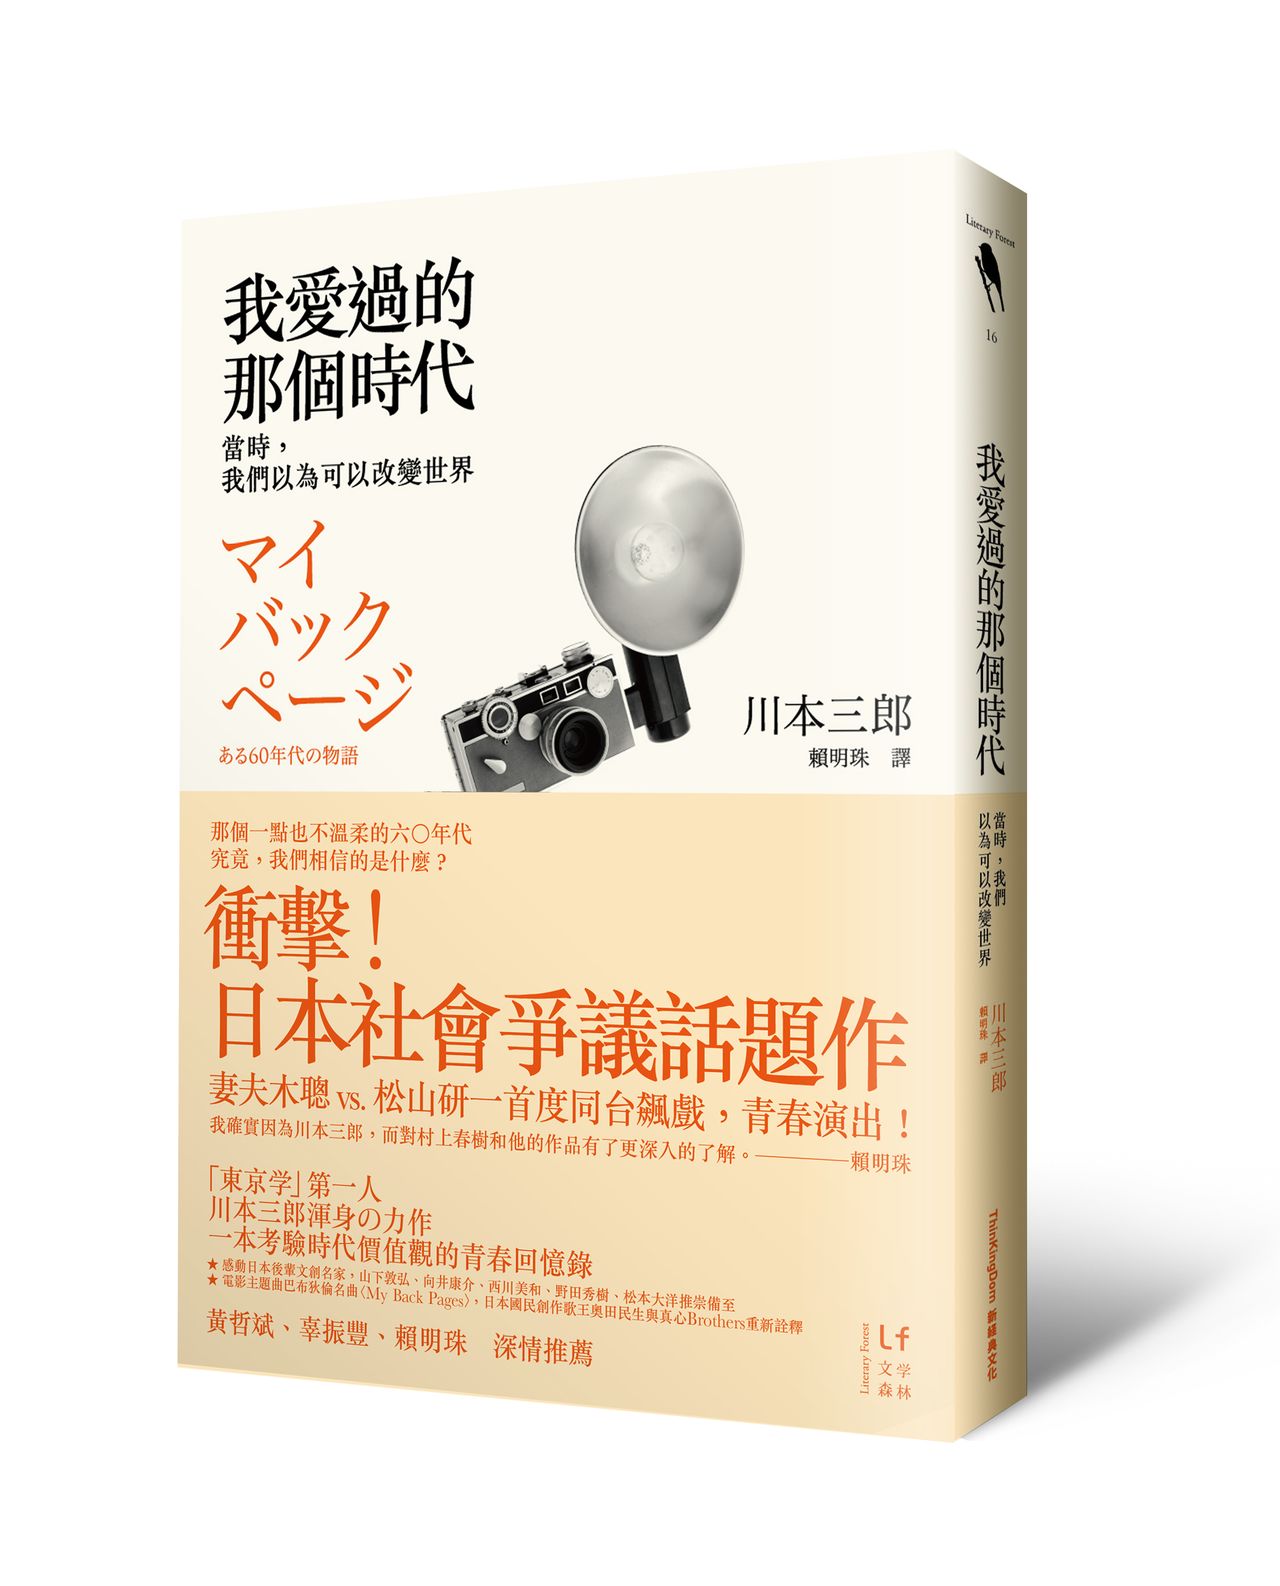 引起臺灣學運世代共鳴的川本三郎著作《我愛過的那個時代》